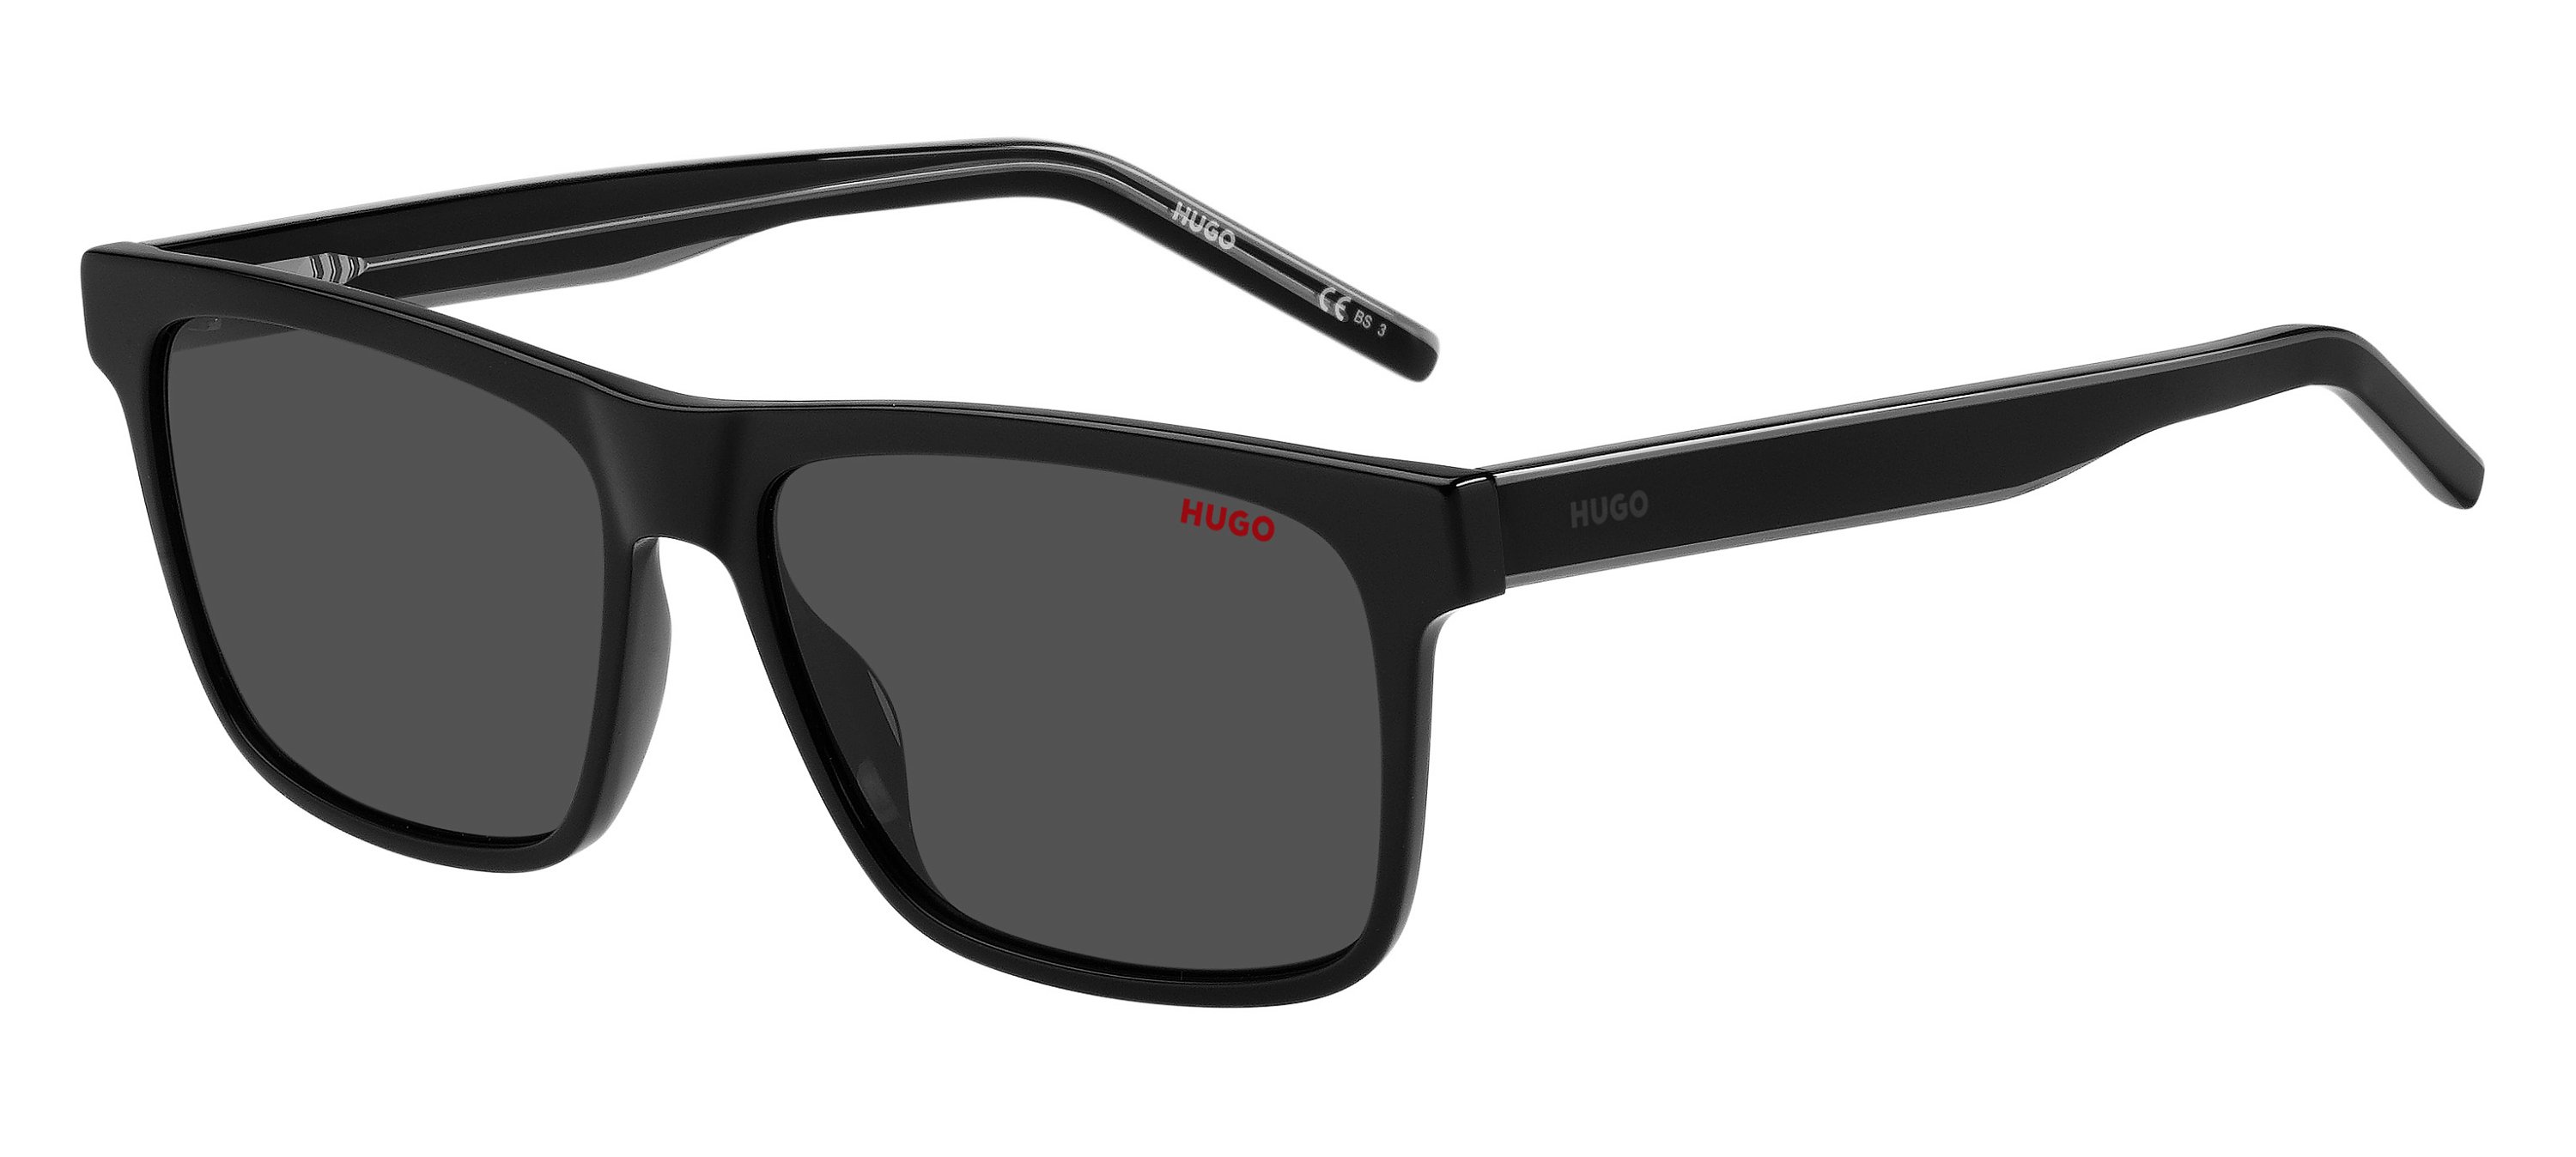 Das Bild zeigt die Sonnenbrille HG1242/S 807 von der Marke Hugo in schwarz.